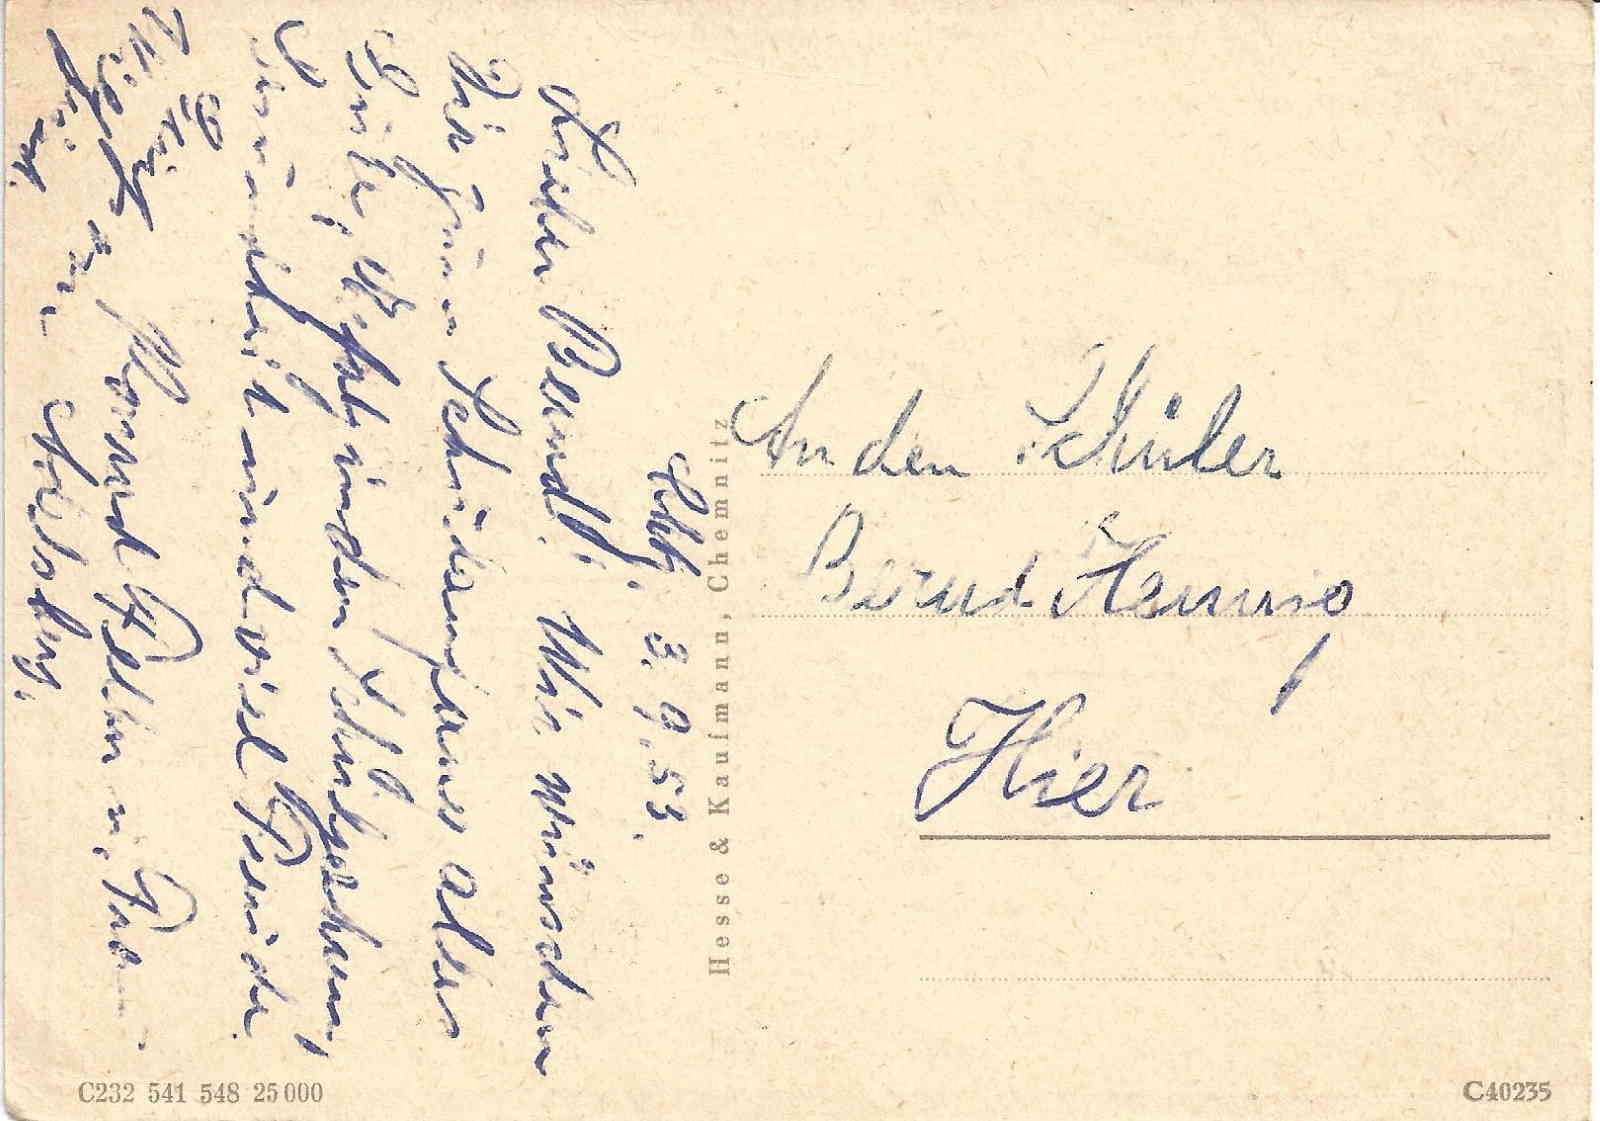 Postkarte aus der ehem. DDR (Rckseite)